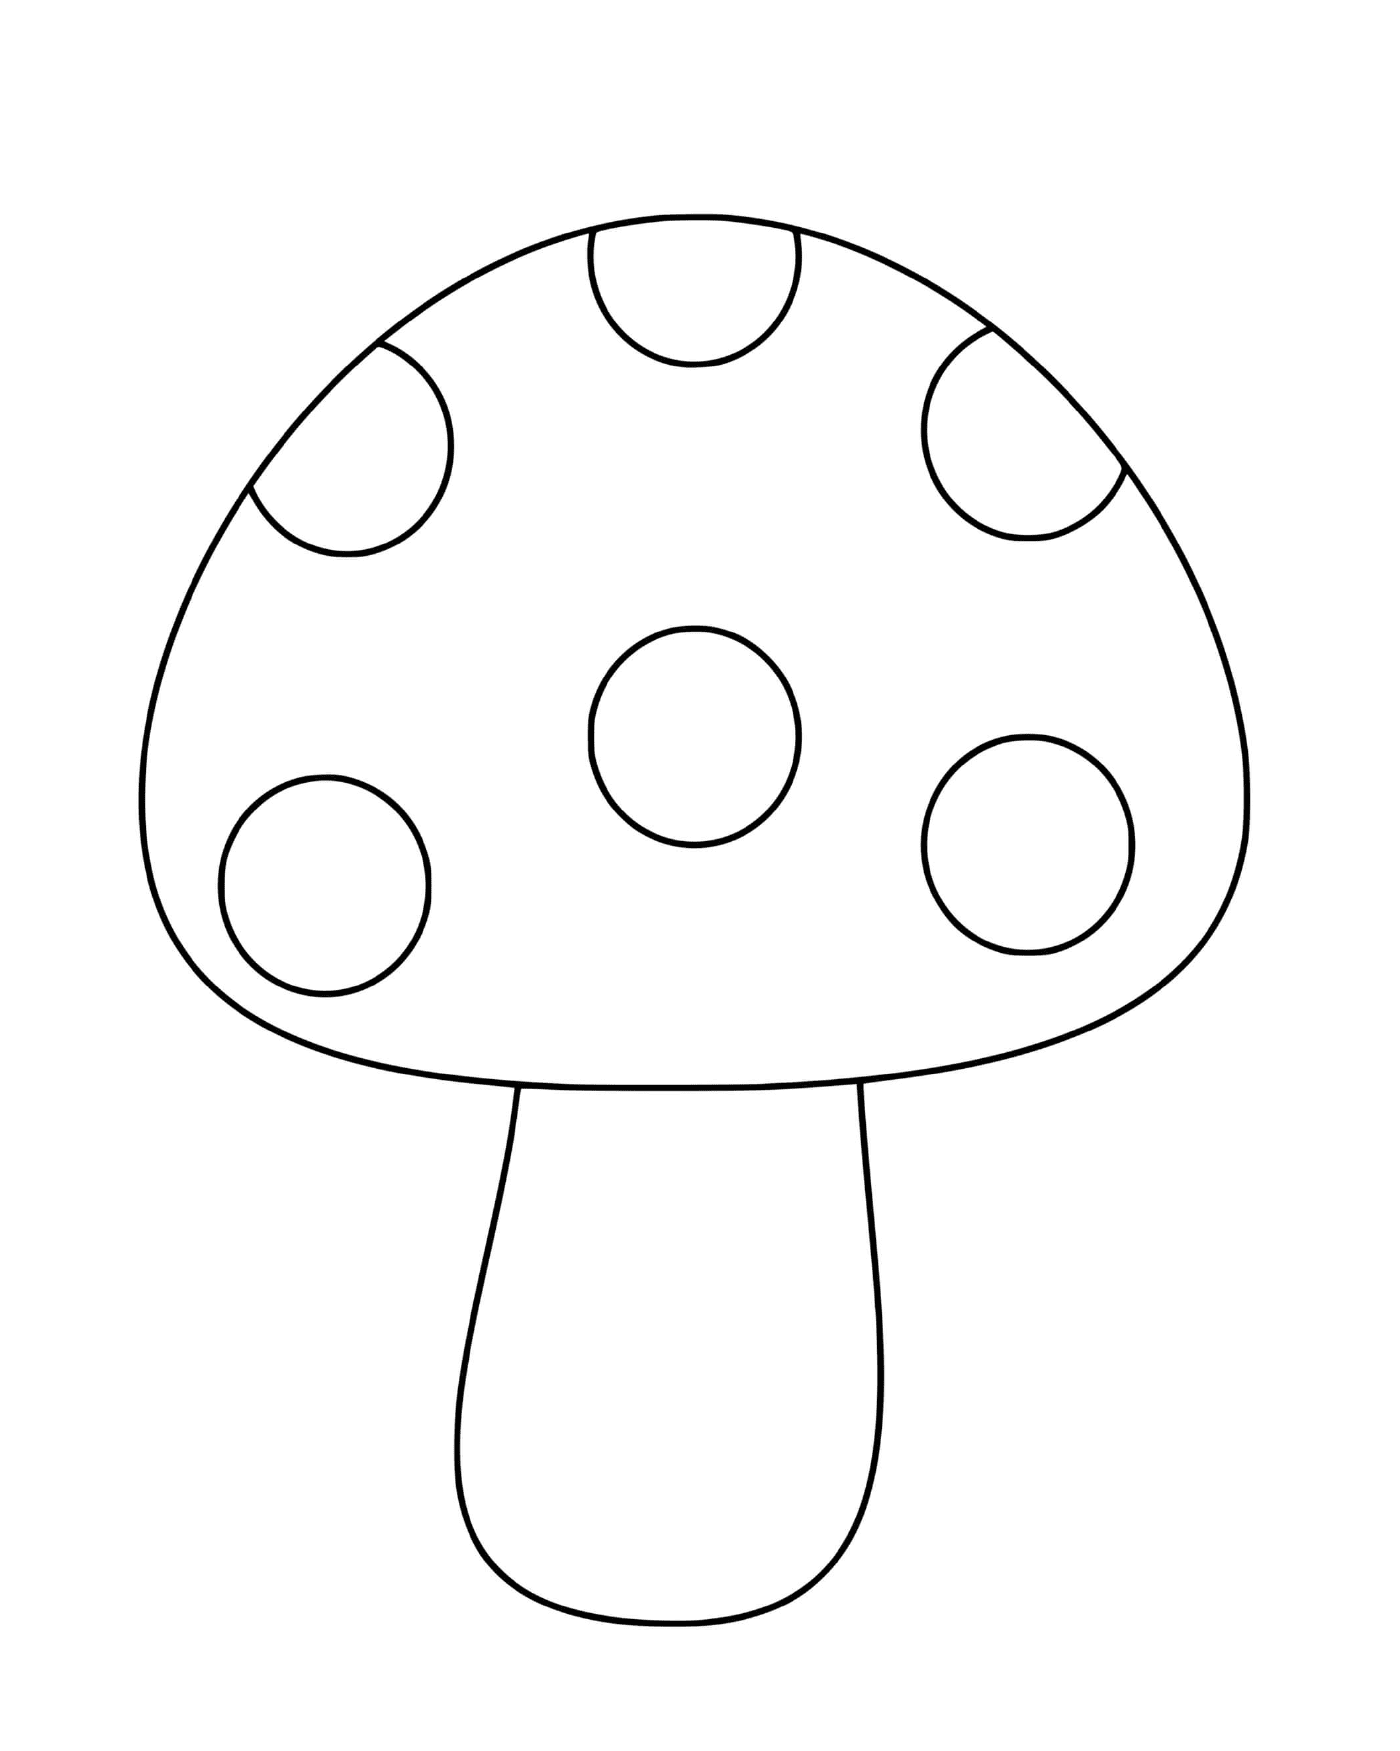  Un simple hongo con un aspecto clásico 